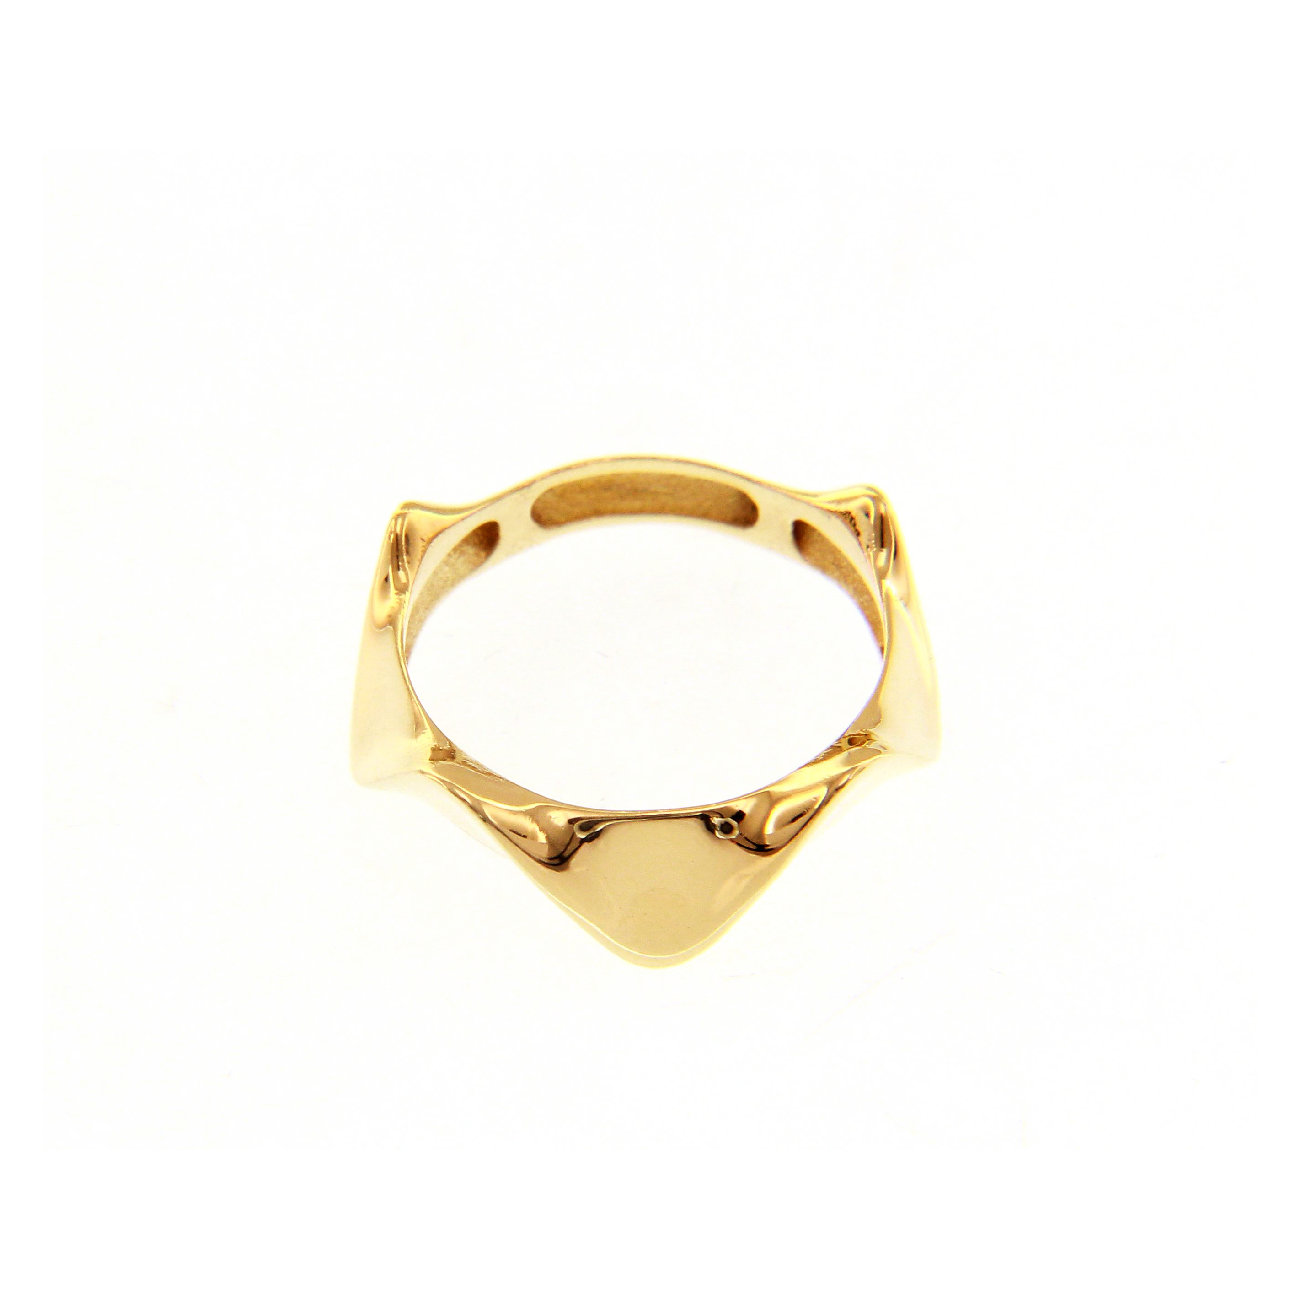 Χρυσό δαχτυλίδι 14Κ σε μορφή στέμματος. Ένα κομψό δαχτυλίδι που μπορεί να φορεθεί και στον δείκτη και να ομορφύνει τις εμφανίσεις σας.